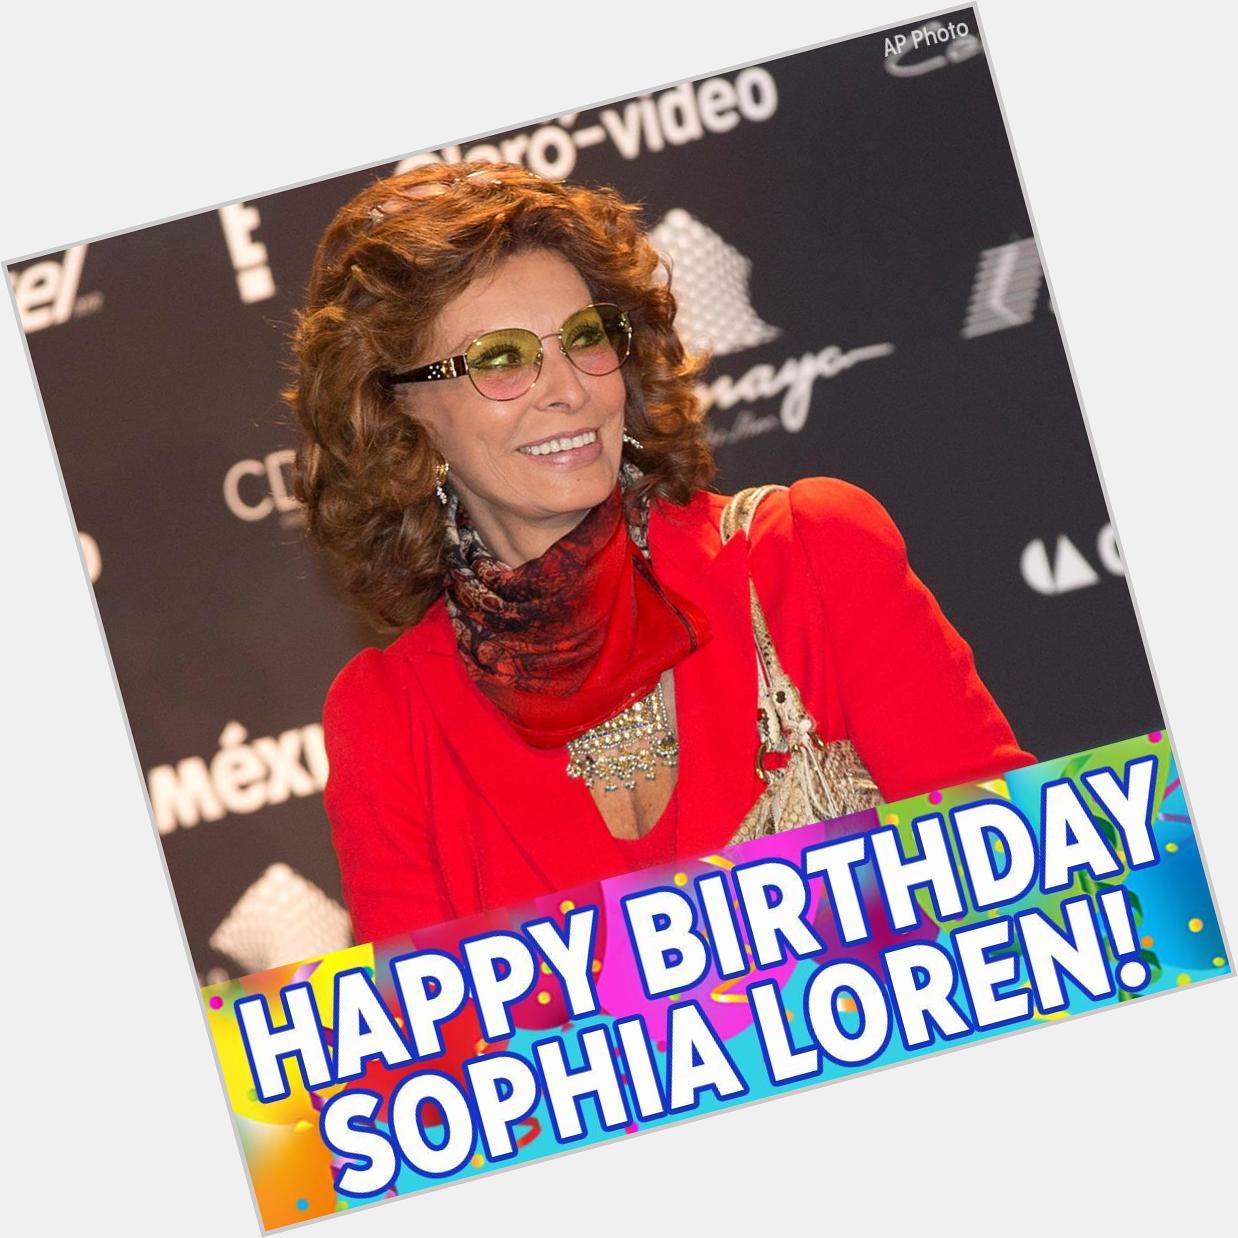 Happy Birthday to Sophia Loren! 